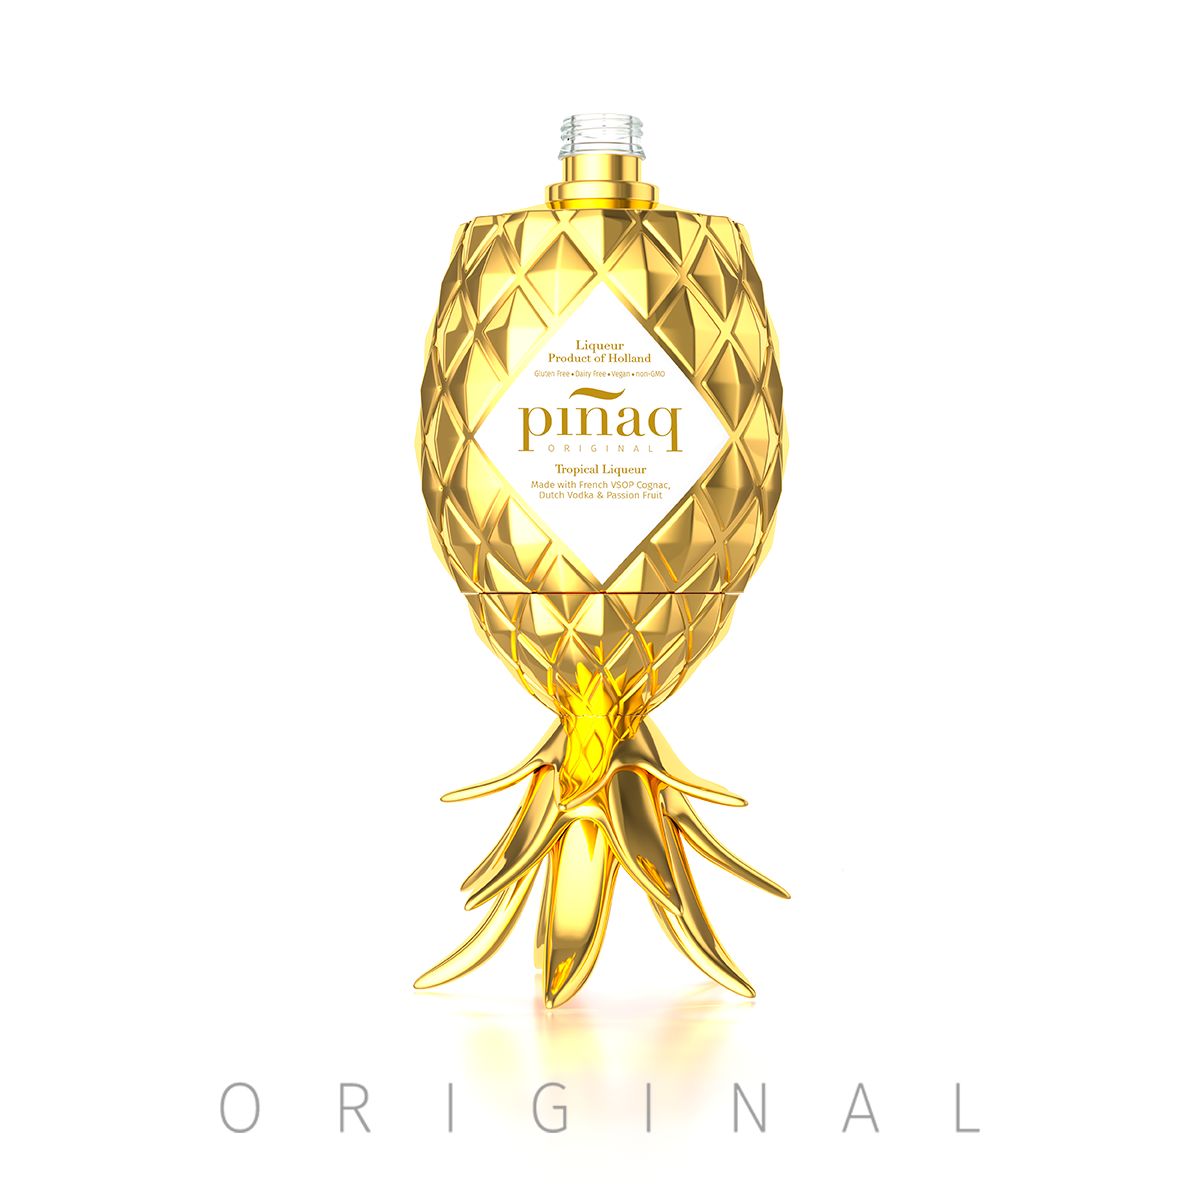 Piñaq Original Tropical Liqueur 17º 100cl菠萝可乐达鸡尾酒